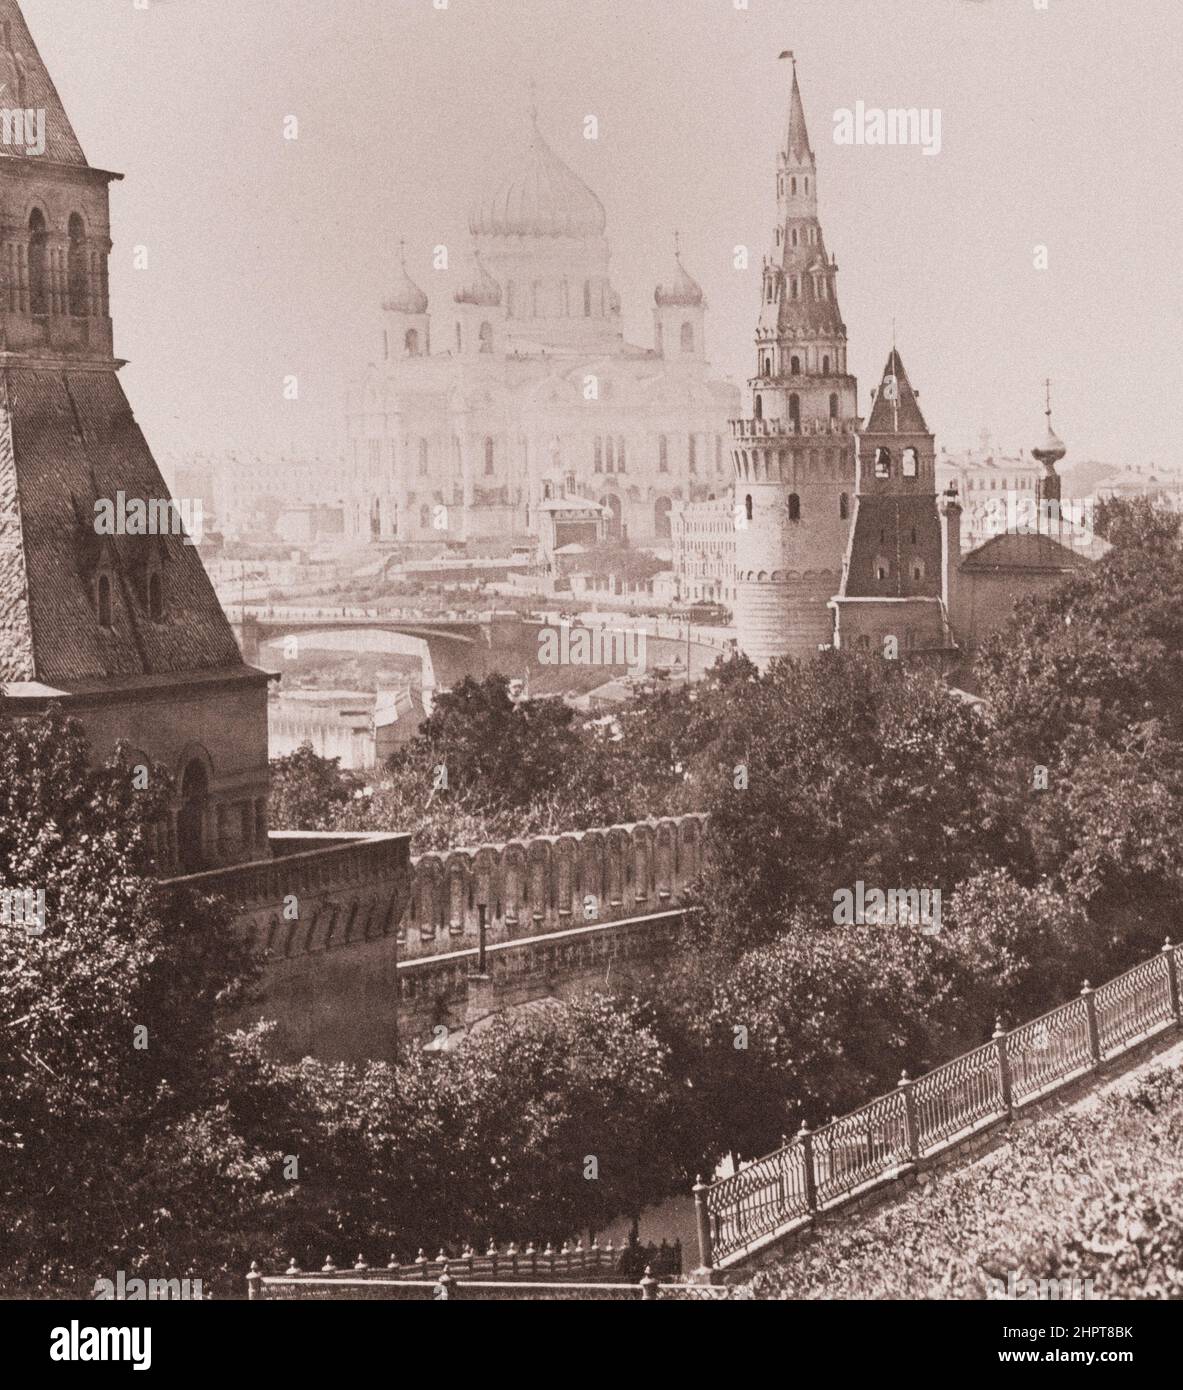 Vintage-Foto des Moskauer Kremls mit Vodovzvodnaja, Blagoweschenskaya, Taynitskaya-Türmen und der Kathedrale von Christus dem Erlöser auf dem Hintergrund. R Stockfoto